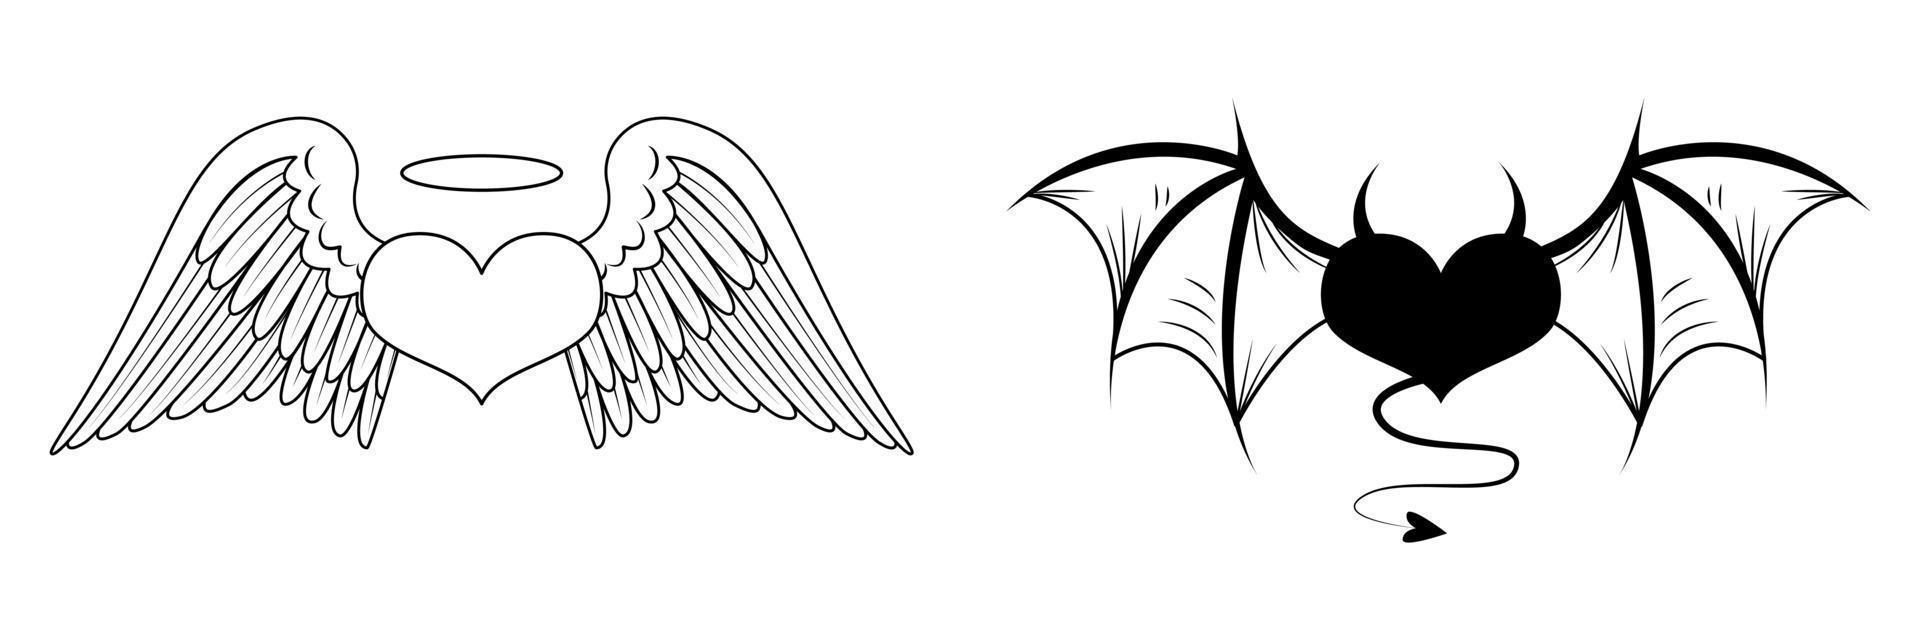 två hjärtan med ängla- och demoniska vingar. ängelhjärta med gloria. djävulshjärta med horn och svans. skiss för en tatuering. vektor illustration isolerad på vit bakgrund